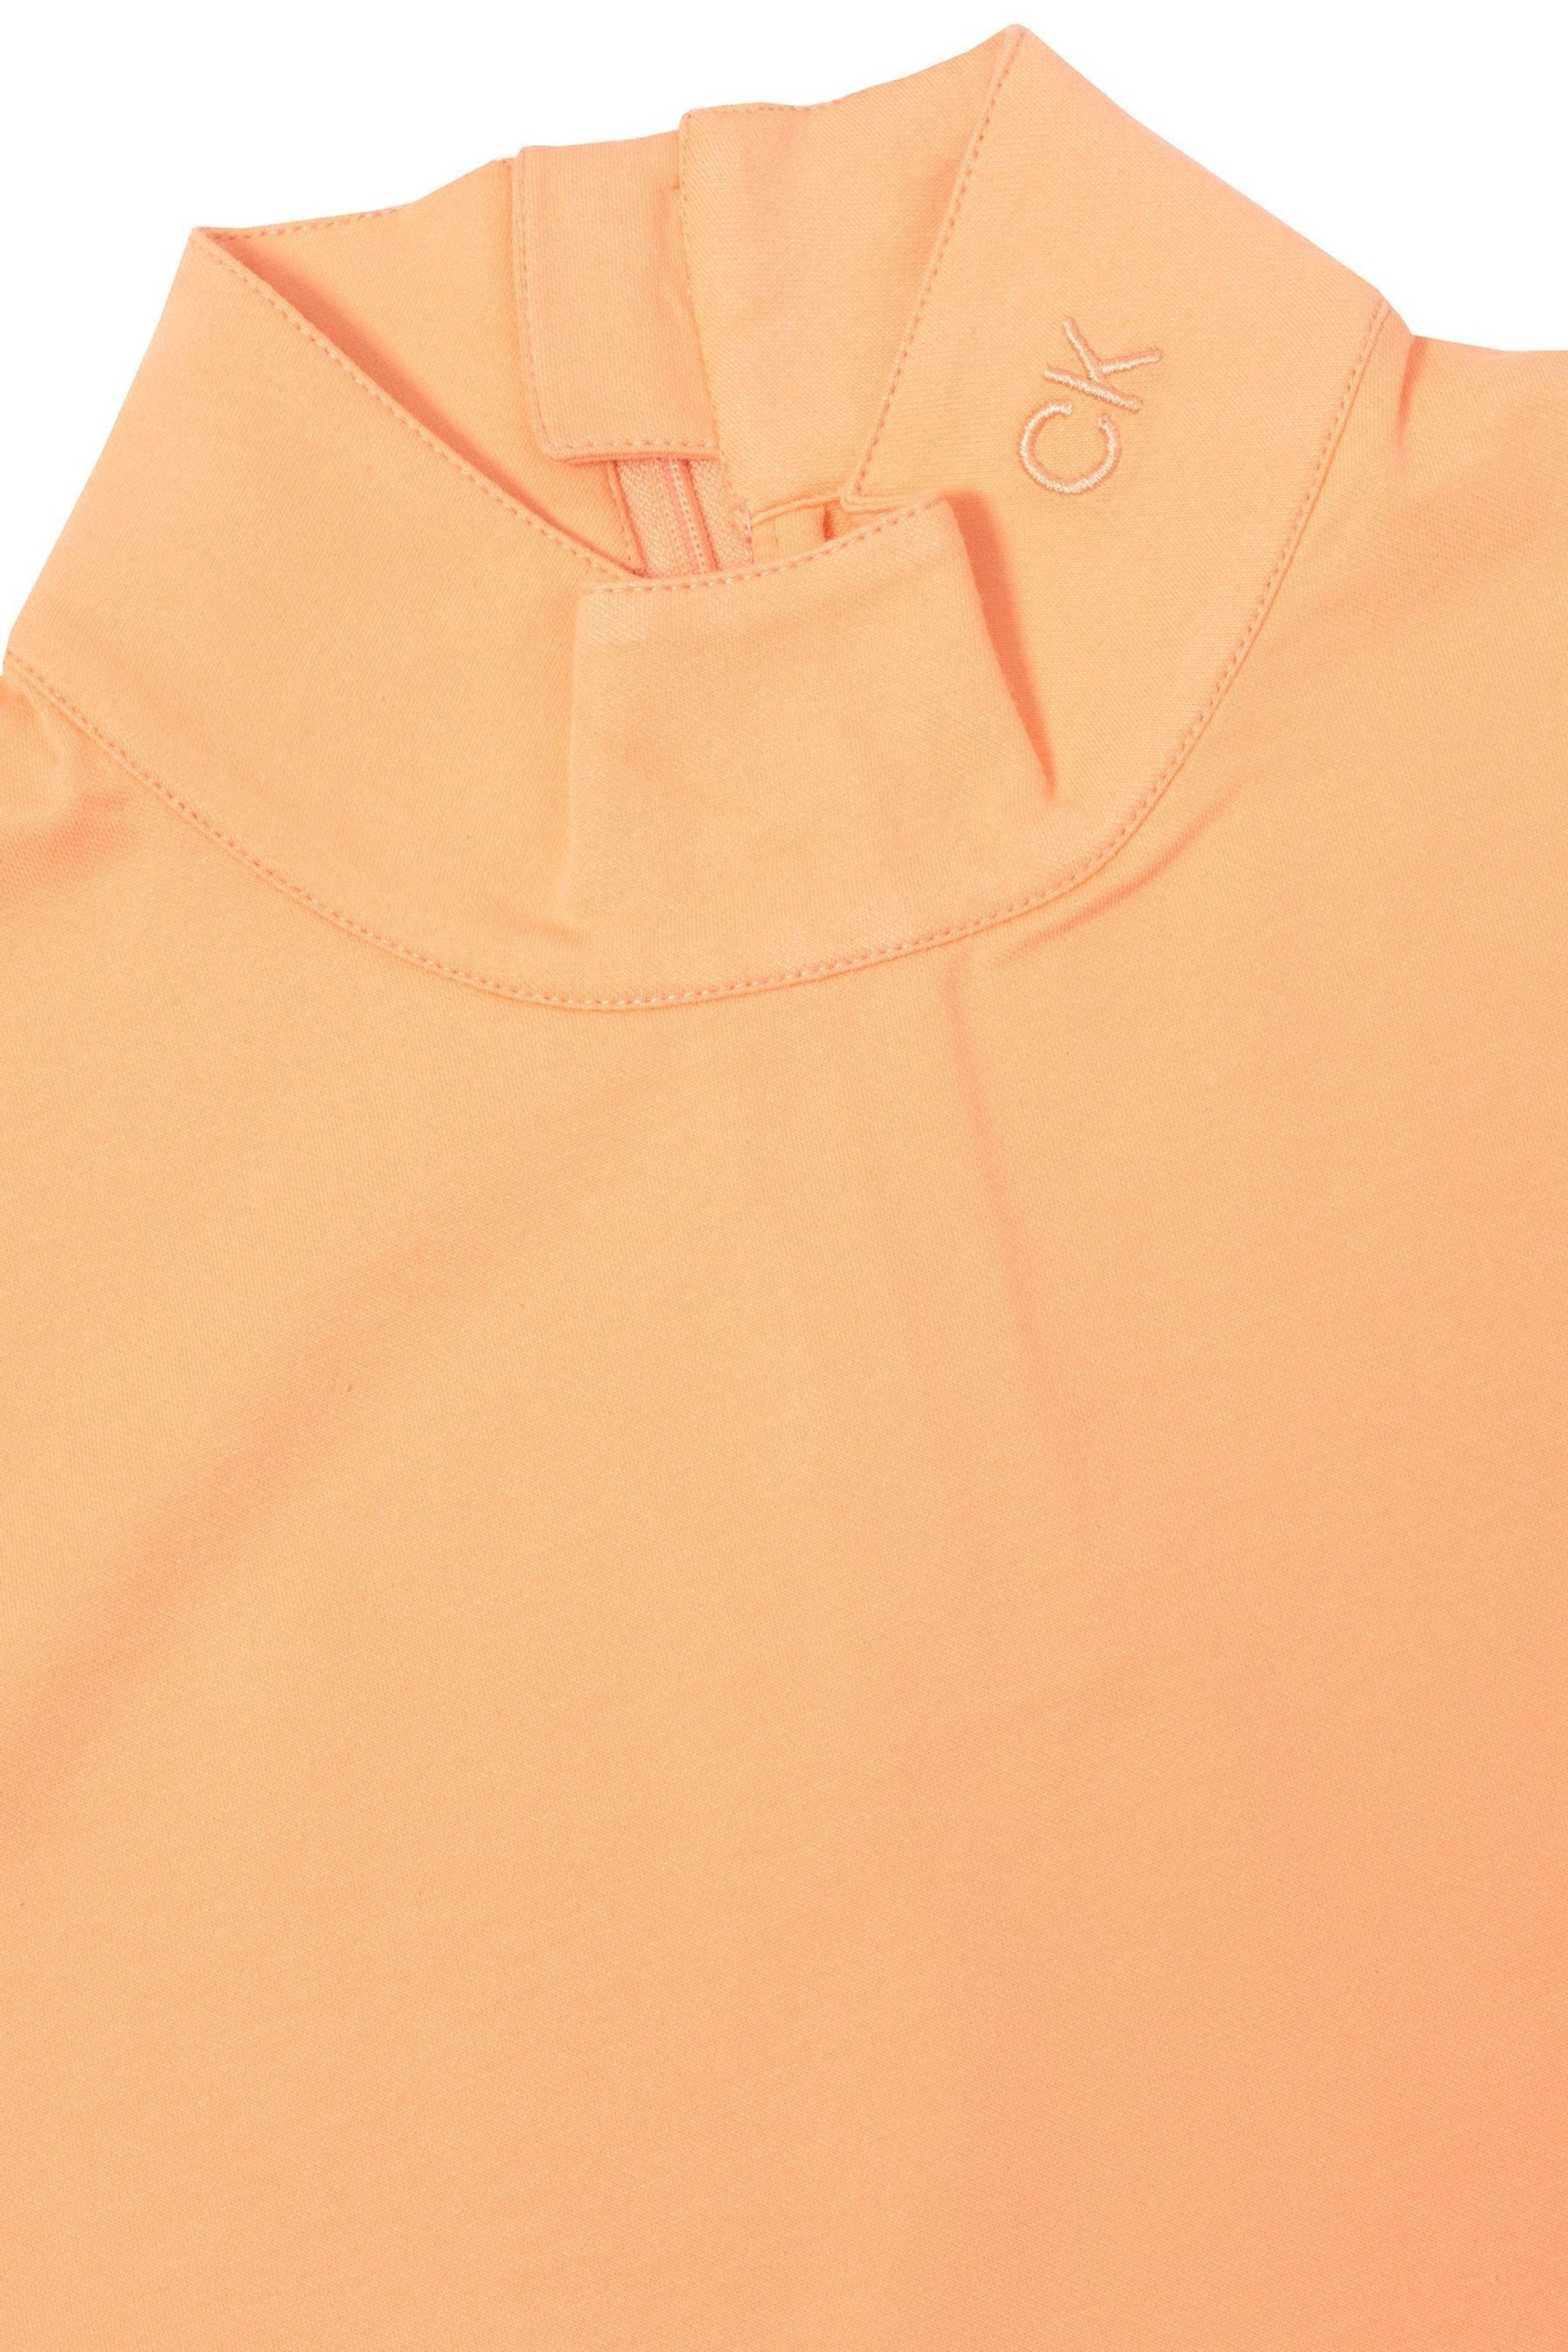 Calvin Klein Golf Orange Skyway Polo Shirt - Image 7 of 8